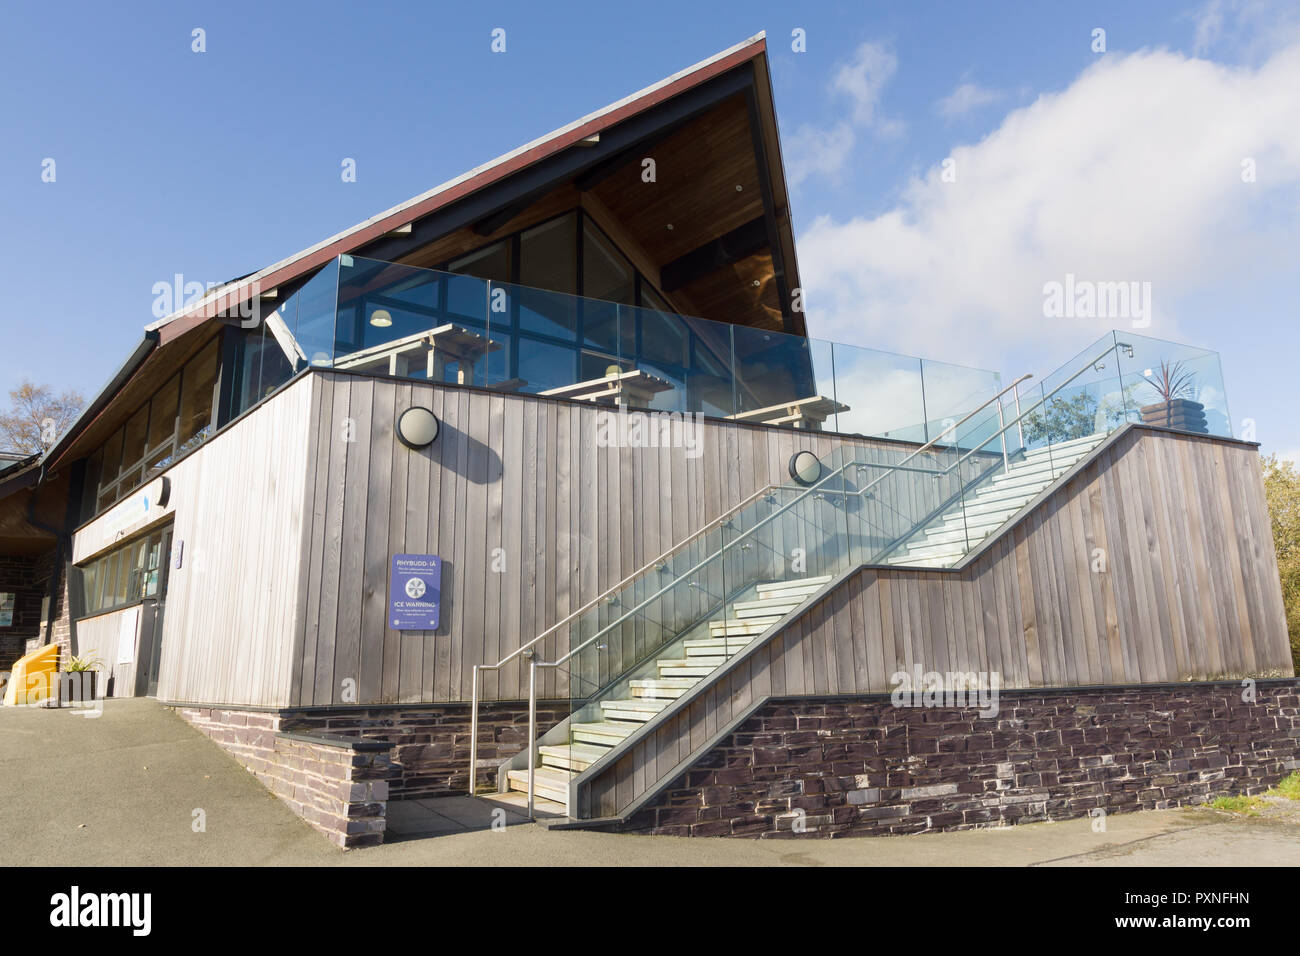 Centro de Visitantes de Llyn Brenig dirigido por Dwr Cymru o Welsh Water donde los visitantes pueden alquilar bicicletas o barcos de pesca y comer en la cafetería Foto de stock